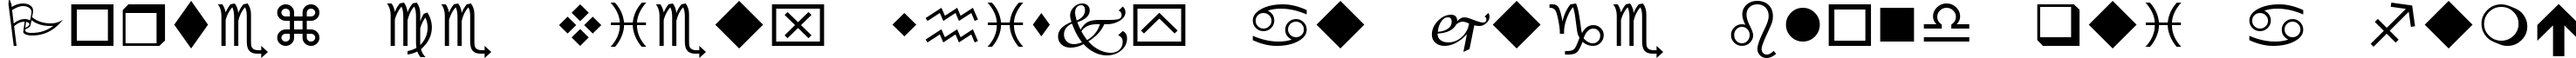 Пример написания шрифтом Wingdings текста на французском